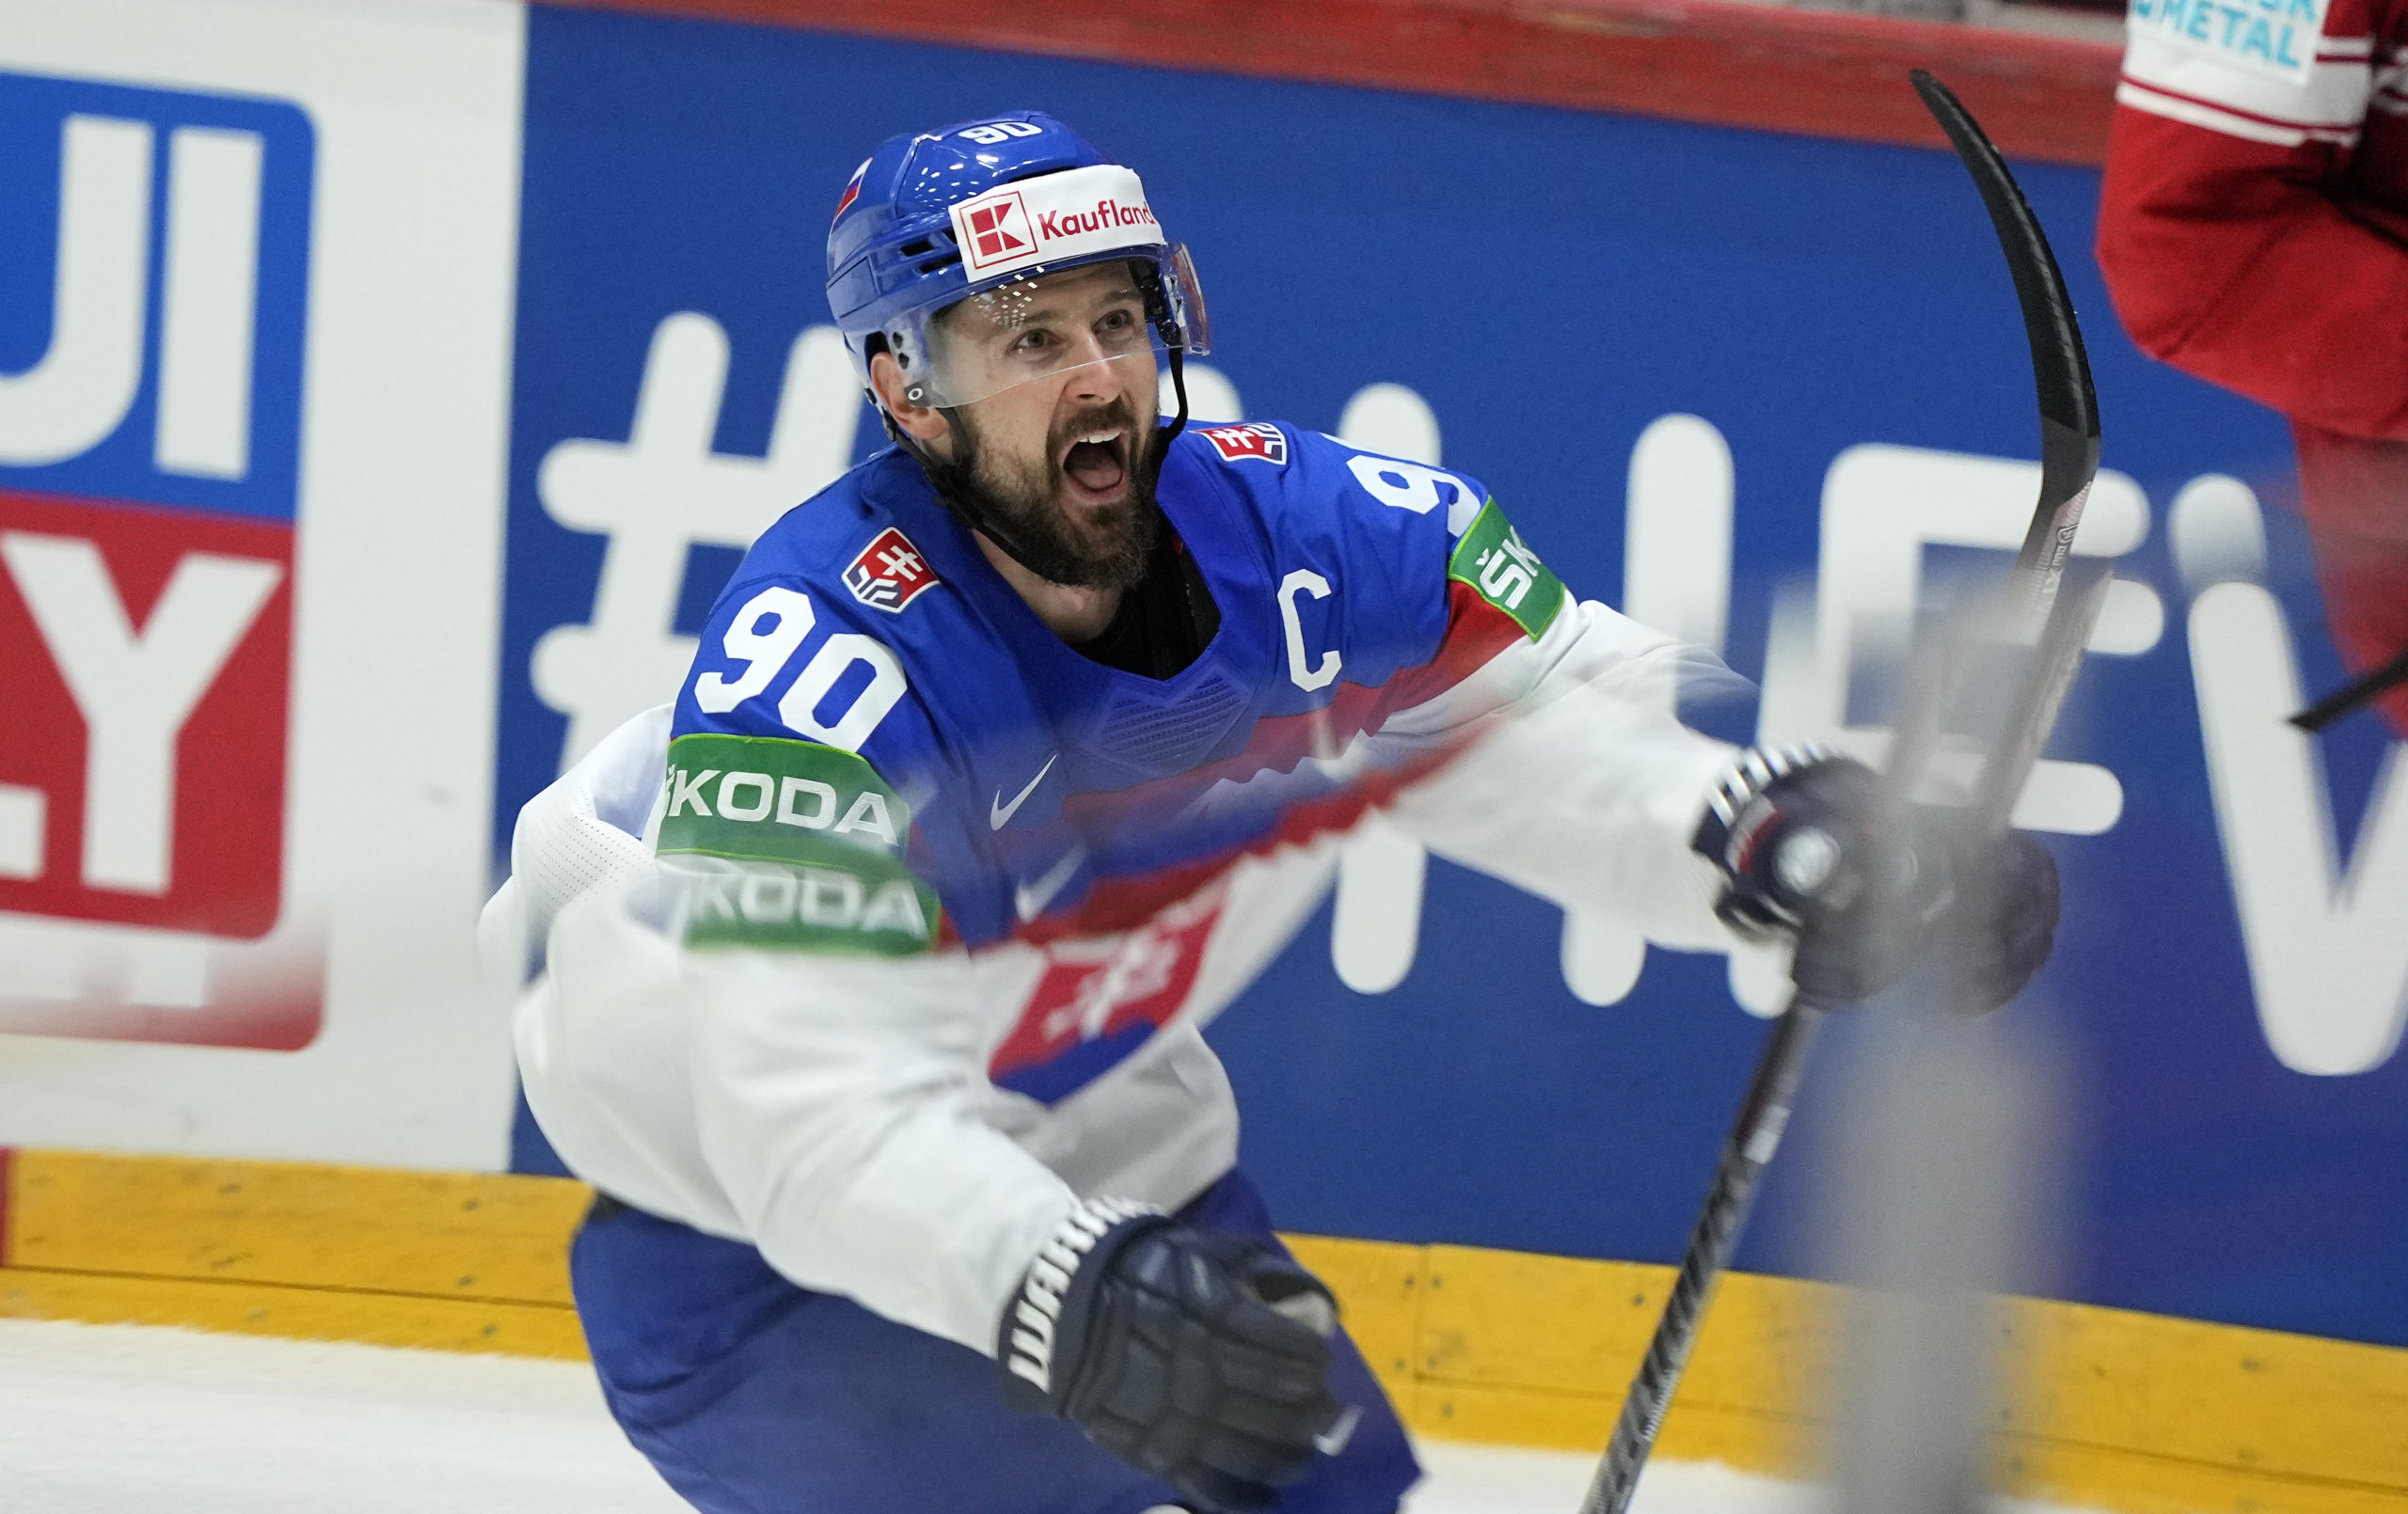 MS v hokeji 2022: Slovensko zničilo Dánsko 7:1 a postúpilo do štvrťfinále. Tatar a Regenda dvojgóloví (video+foto)